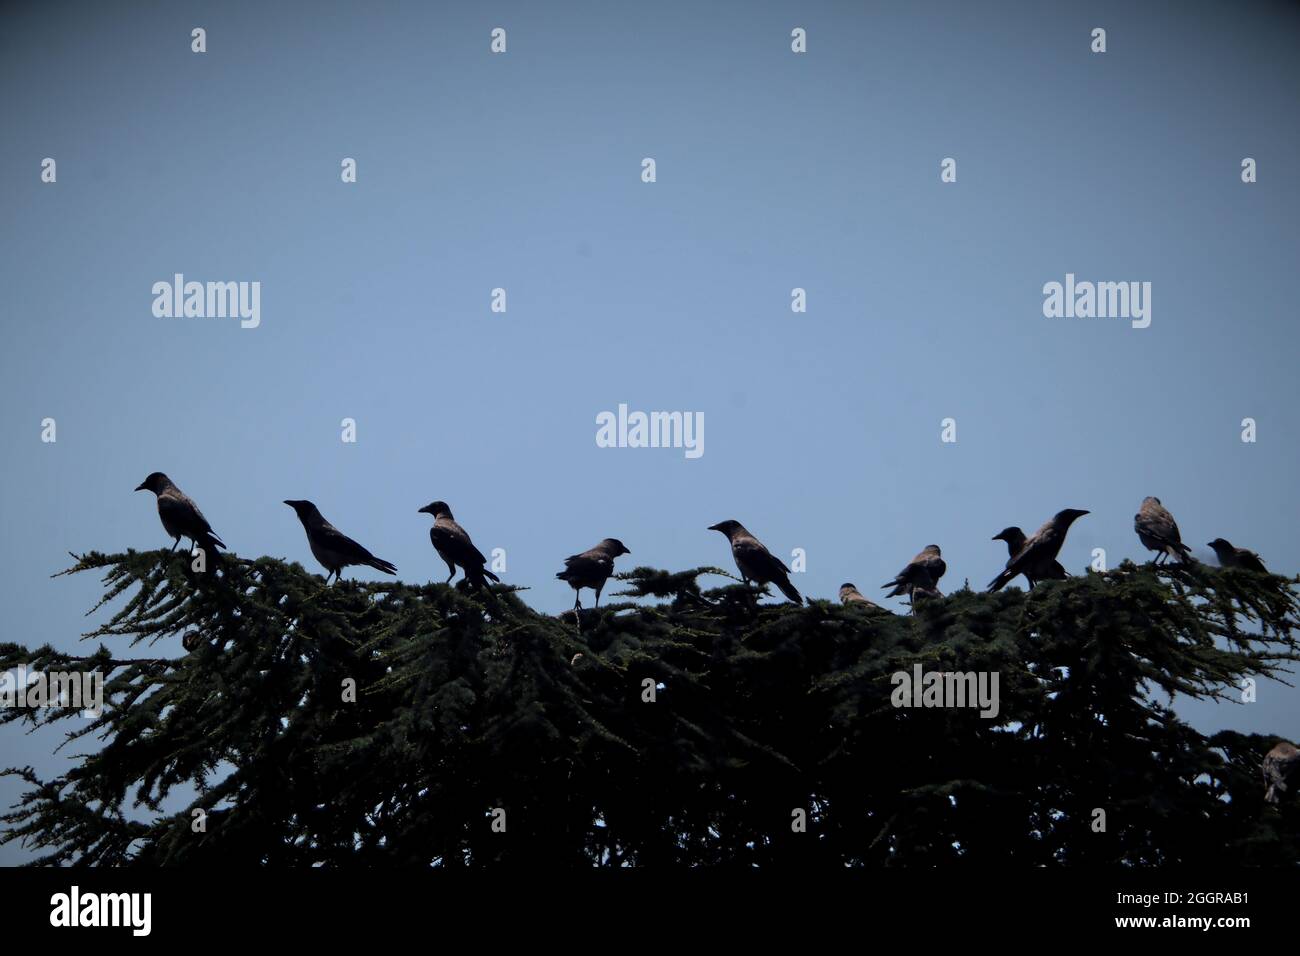 Un gran grupo de cuervos se sienta en un abeto cortado al atardecer. Ambiente espeluznante Foto de stock